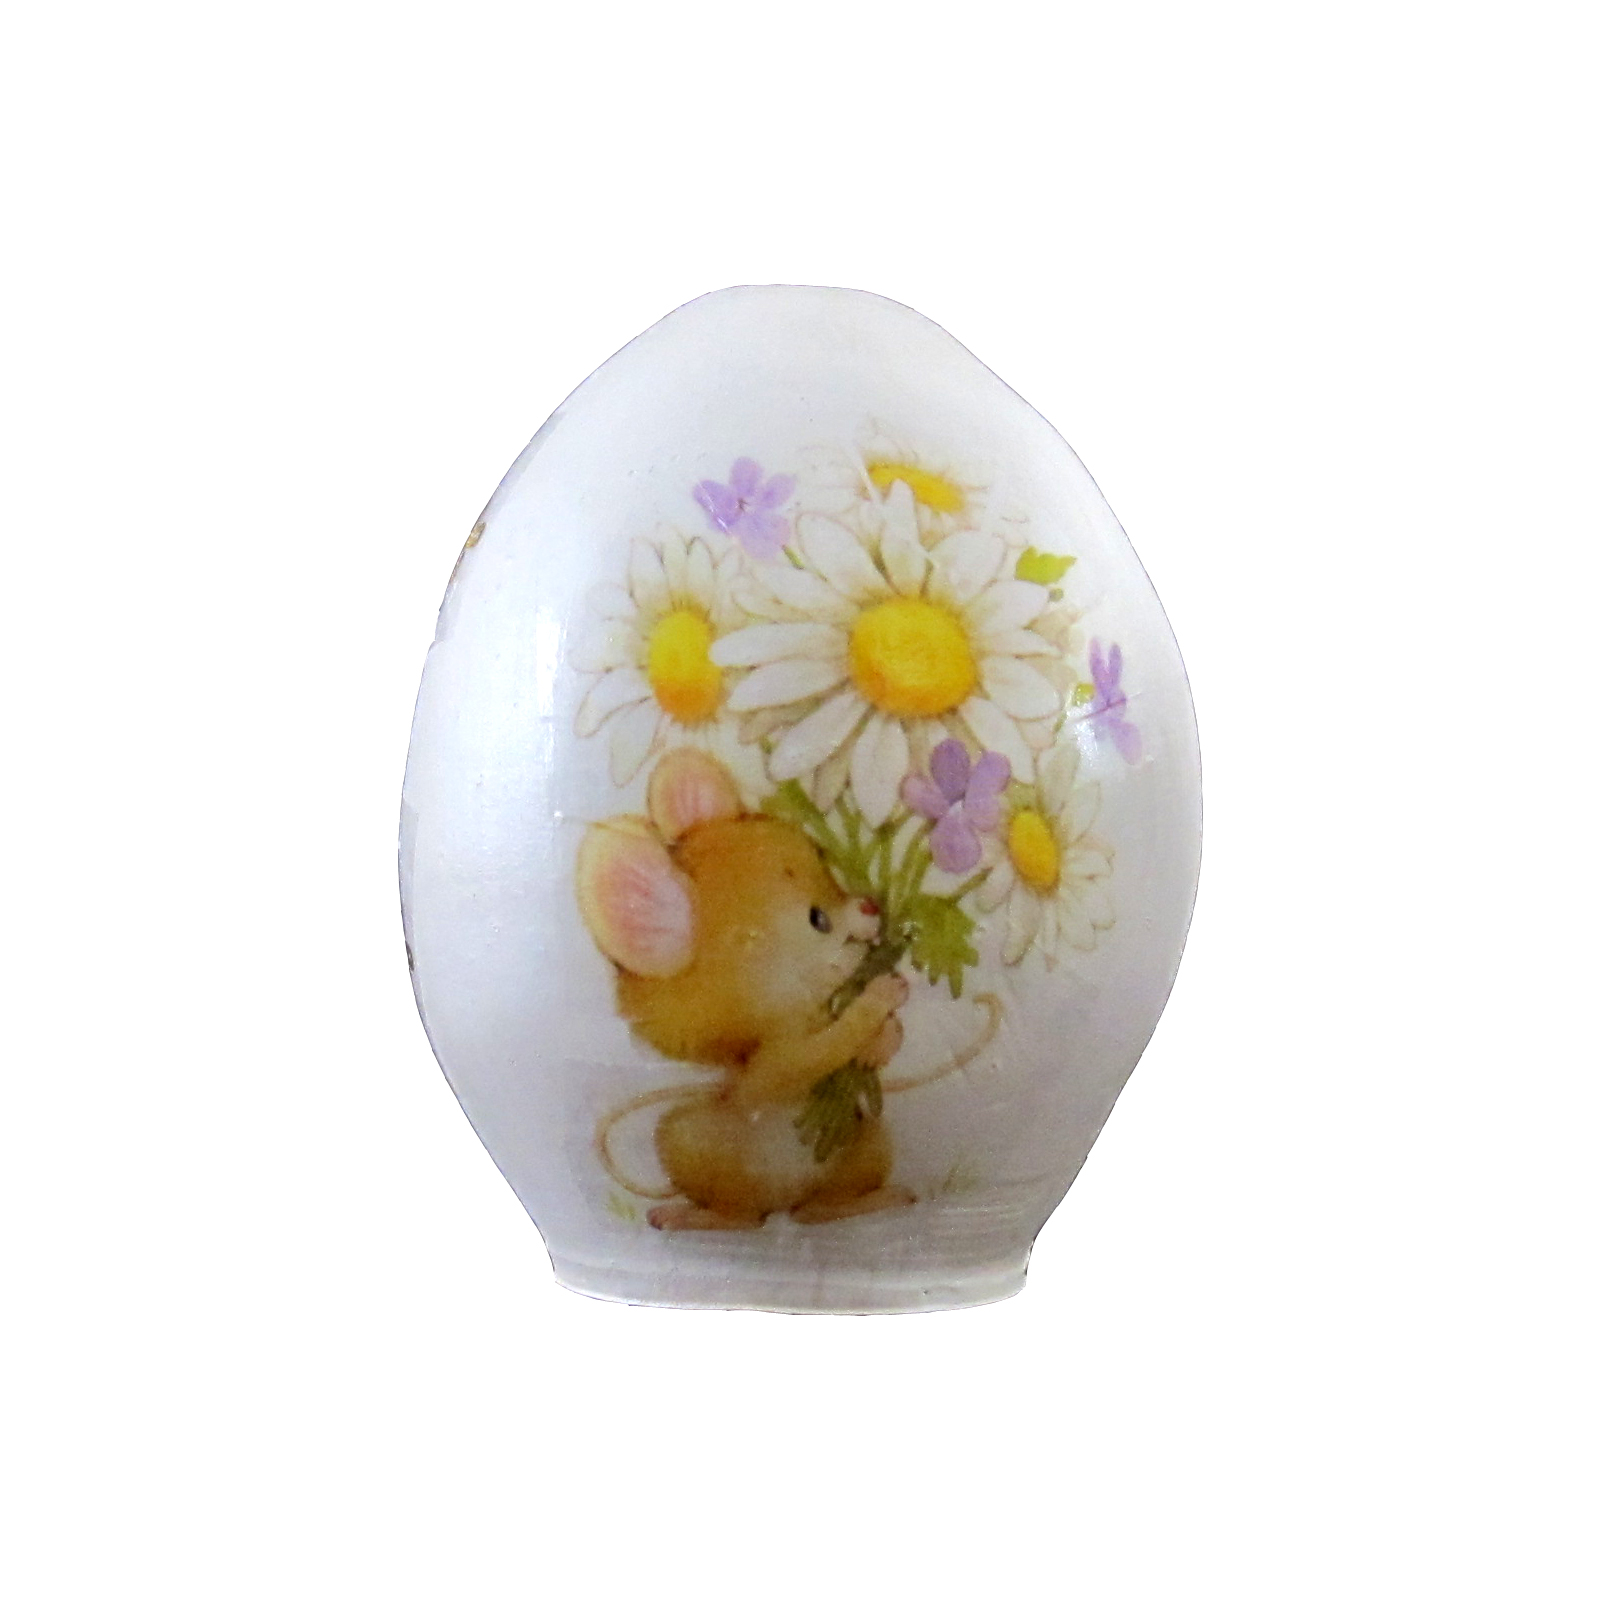 تخم مرغ تزیینی طرح موش و گل های بهاری کد ۱۳۹۹